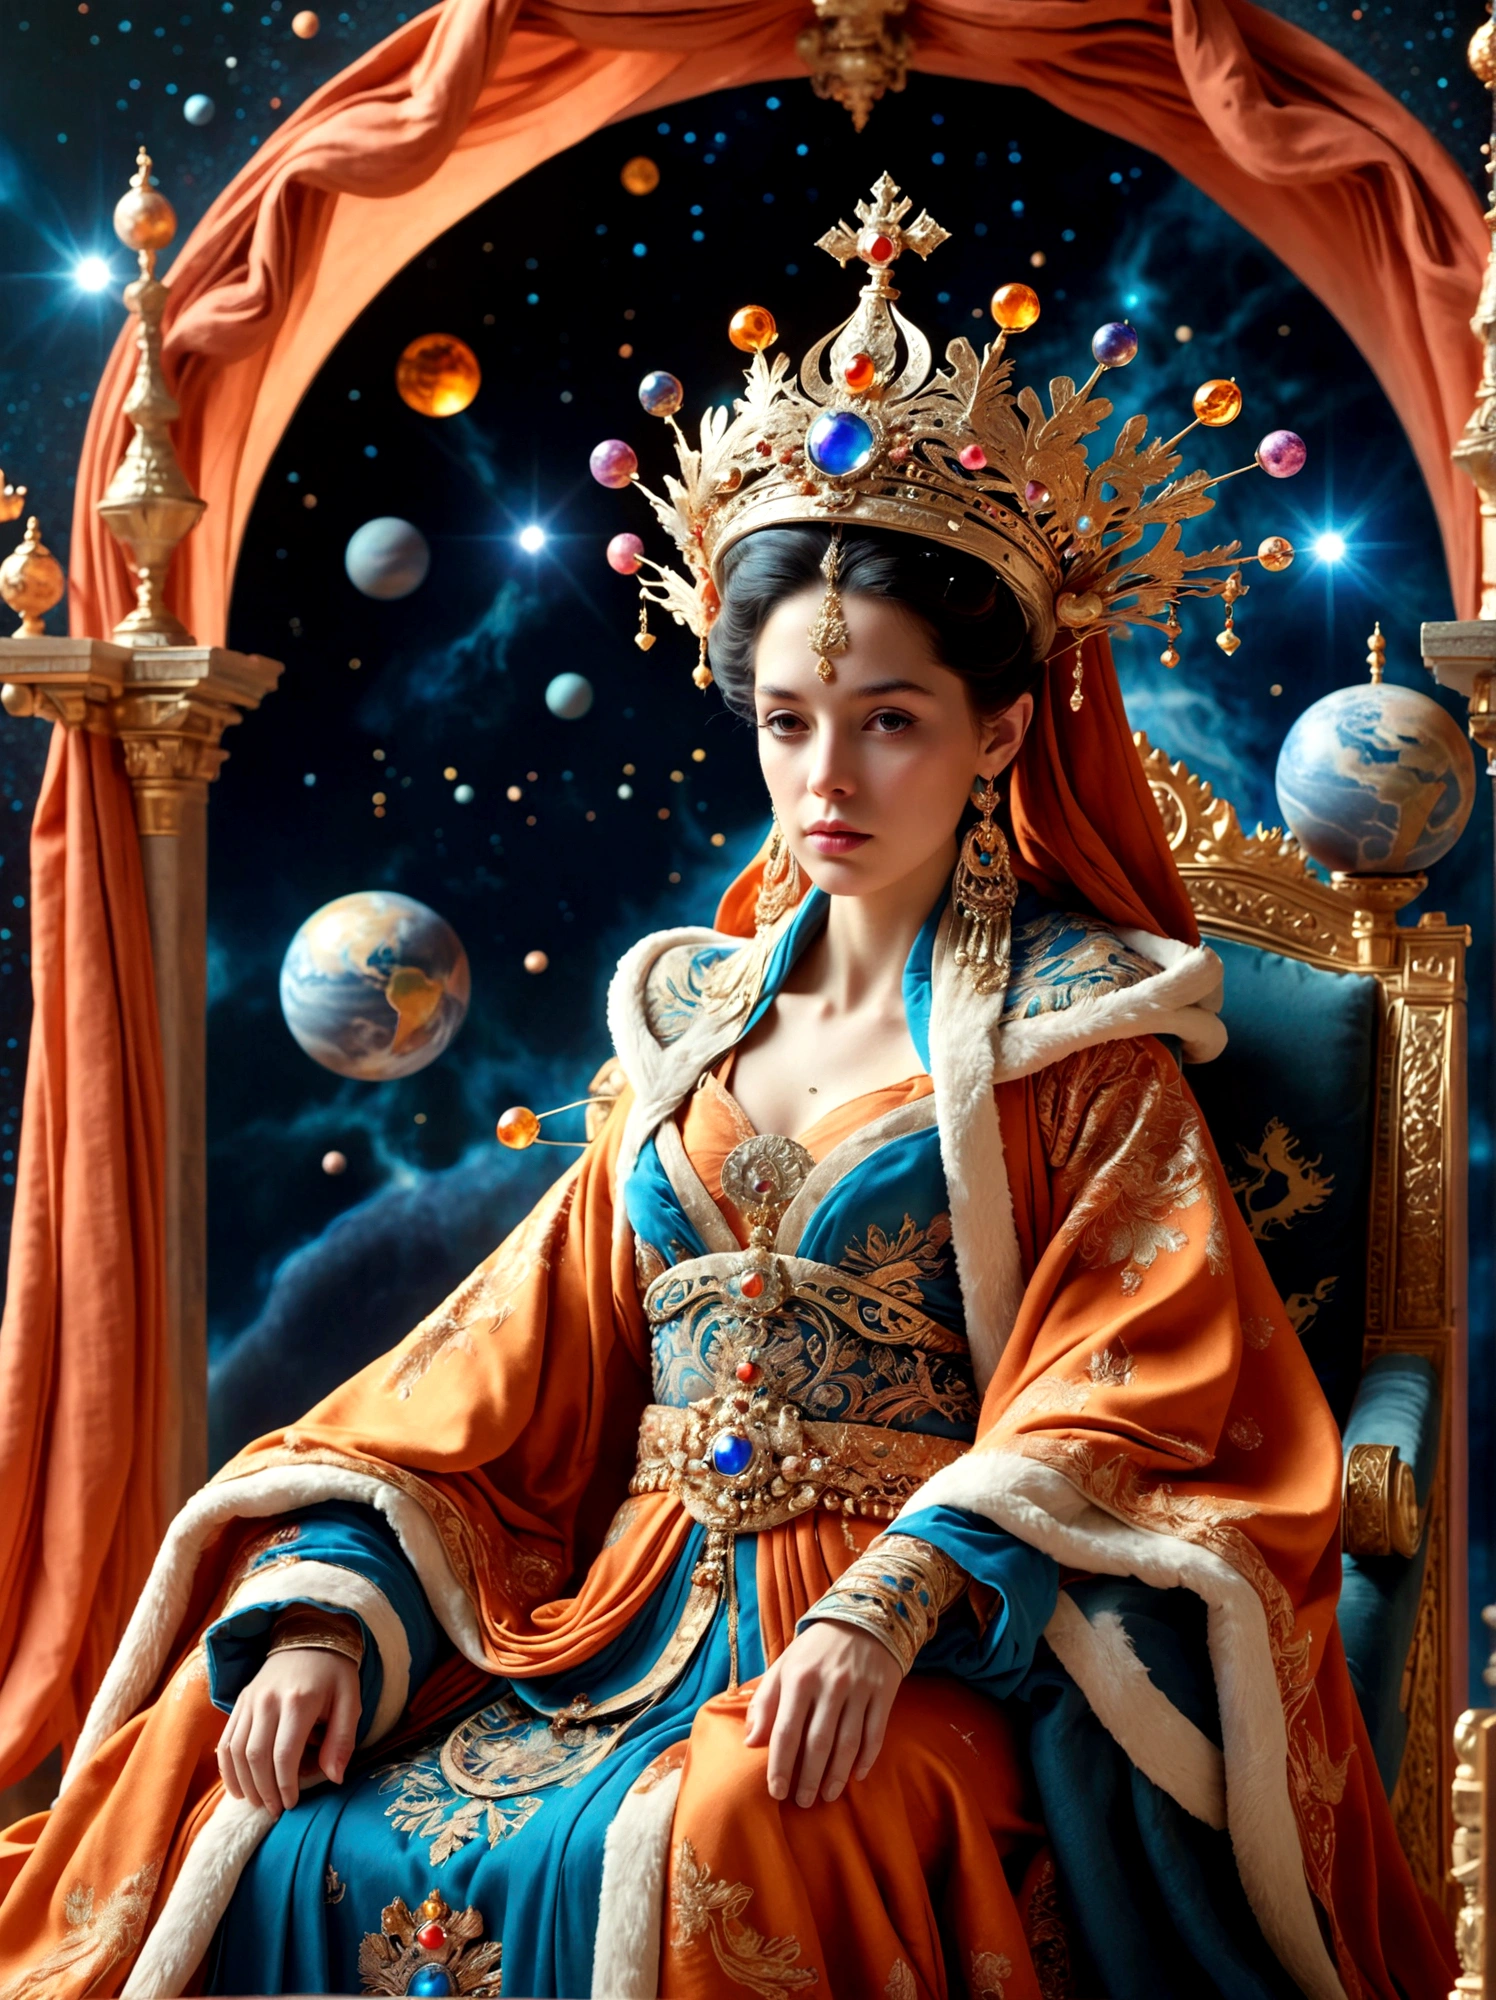 (神話の女王:1.3)，豪華なローブを着た王族の人物, 大きな王冠を飾った, 玉座に座っている, 舞台は異世界的で非現実的, 広大な宇宙空間に位置する, この像はローブの豊かな生地に完全に包まれた小さな惑星の上に腰掛けている。, 王室の贅沢さを反映している